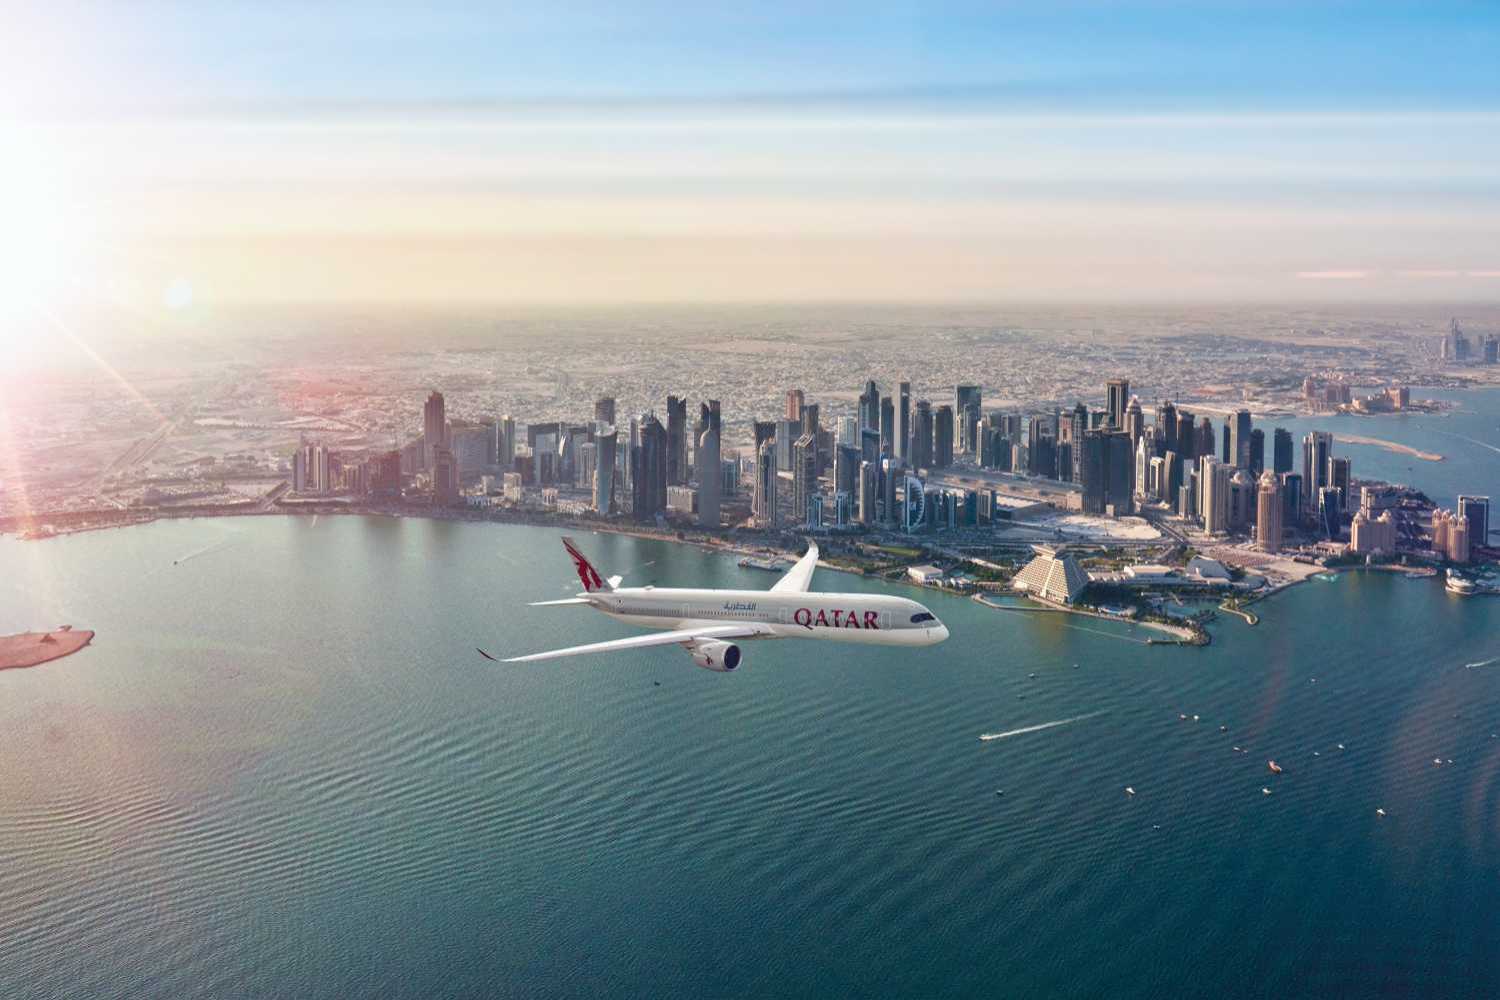 qatar airways gutscheincode gutscheine rabatt gutscheincode